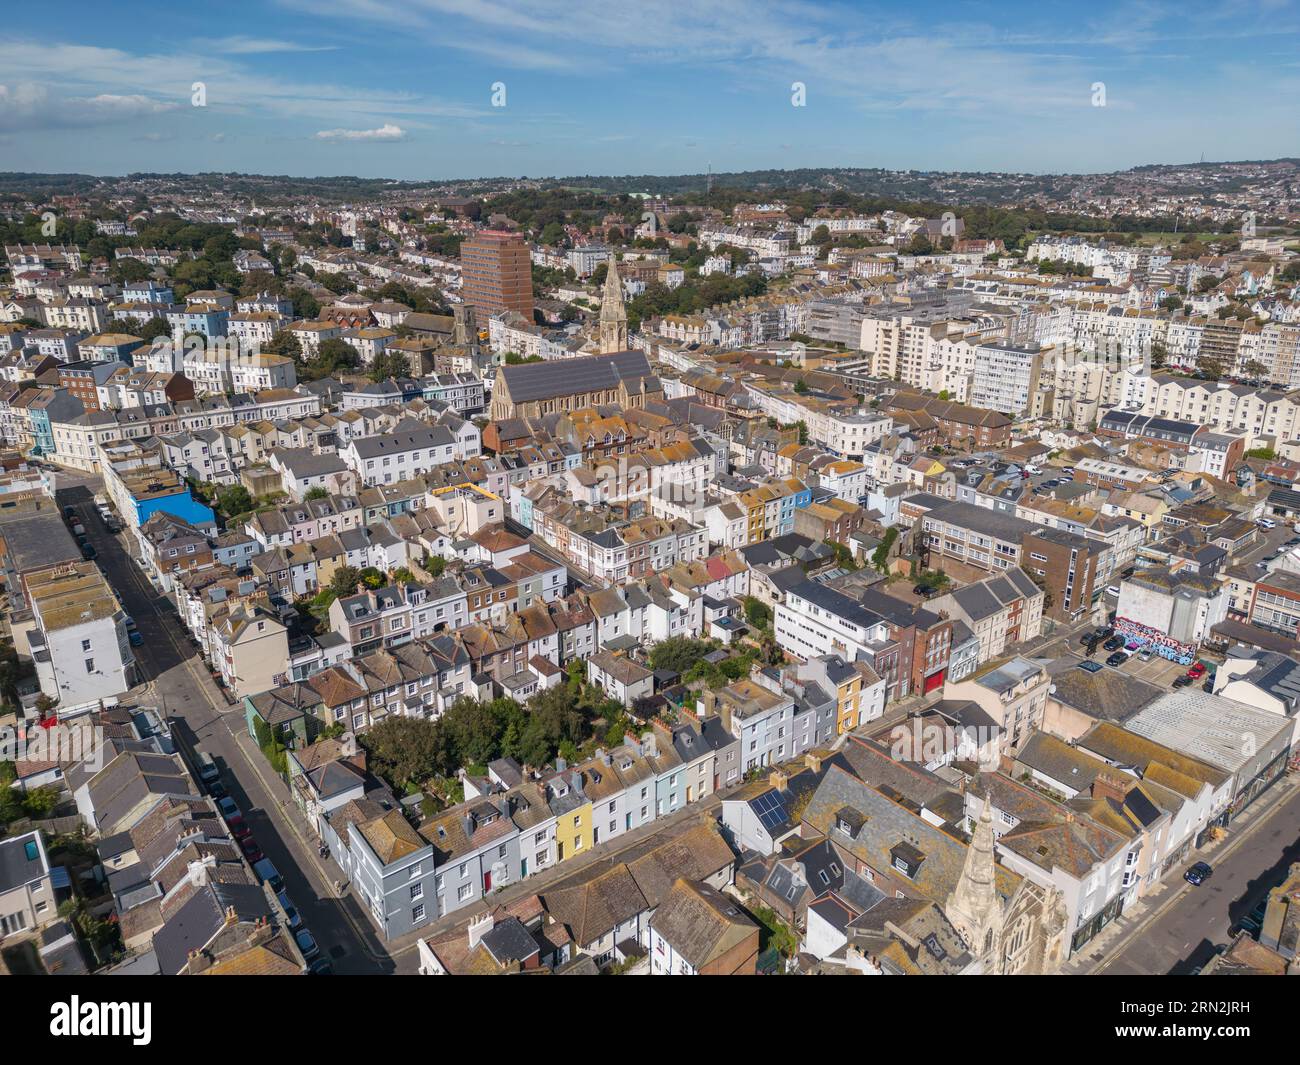 Vue aérienne des propriétés (hôtels inclus) près du front de mer à Hastings, East Sussex, Royaume-Uni. Banque D'Images